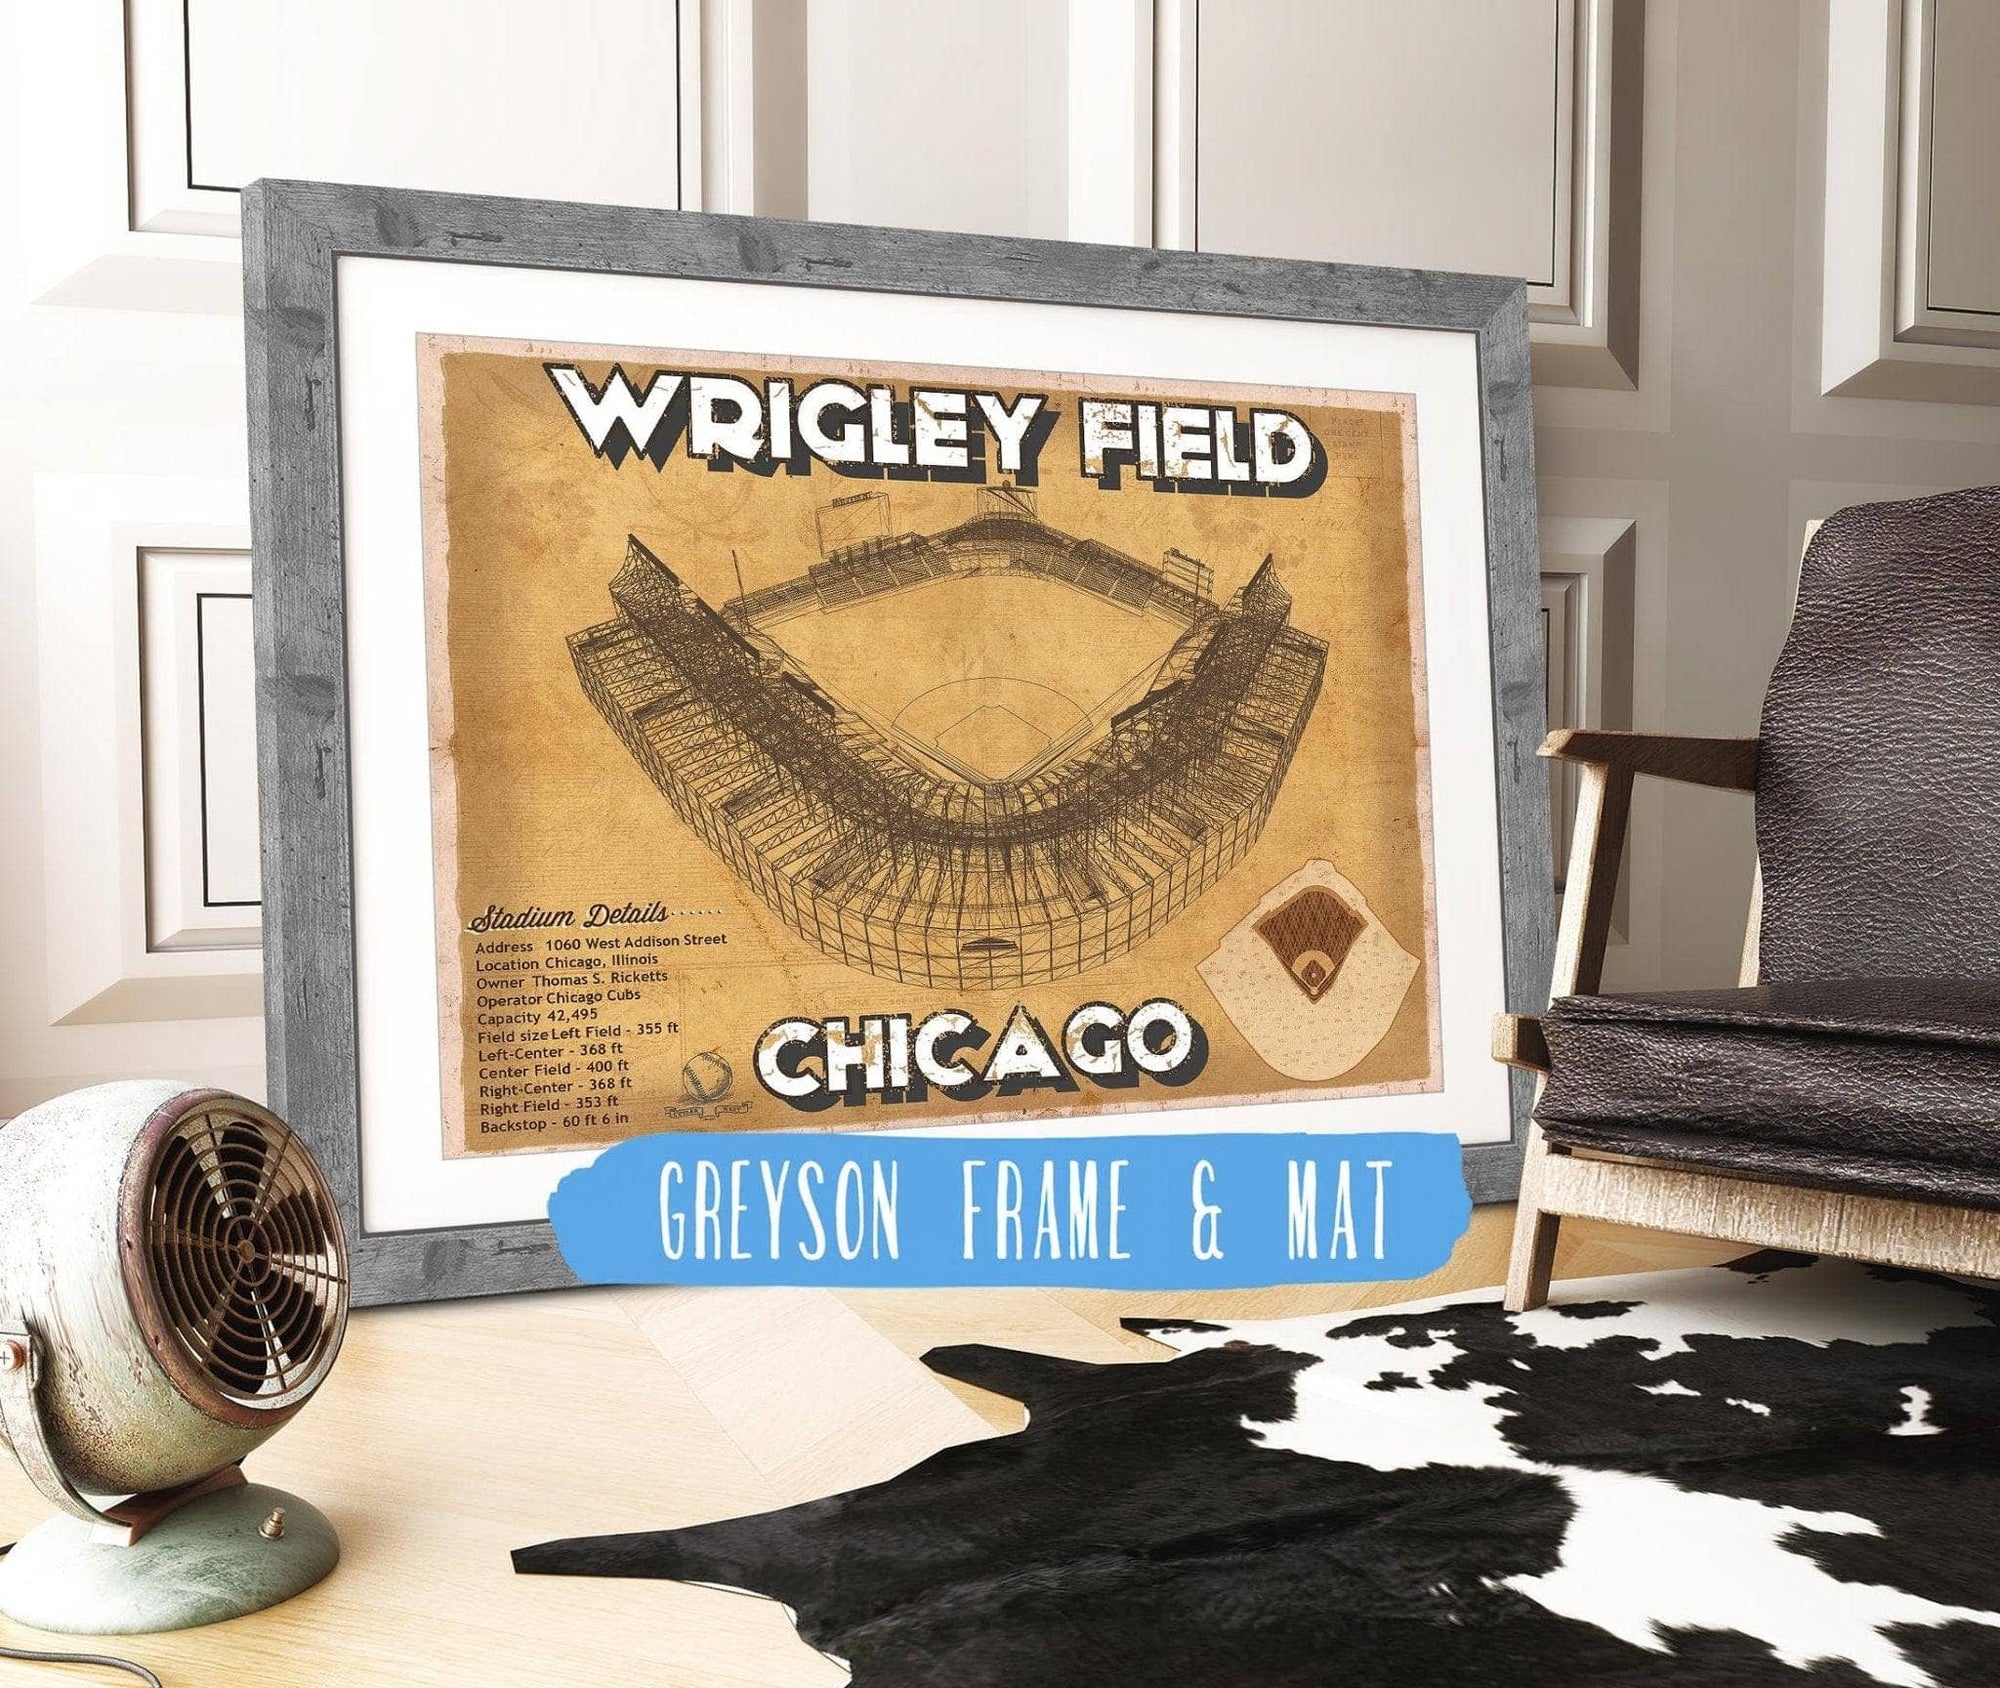 Cutler West 14" x 11" / Greyson Frame & Mat Wrigley Field Print - Chicago Cubs Baseball Print 703108870-14"-x-11"6801